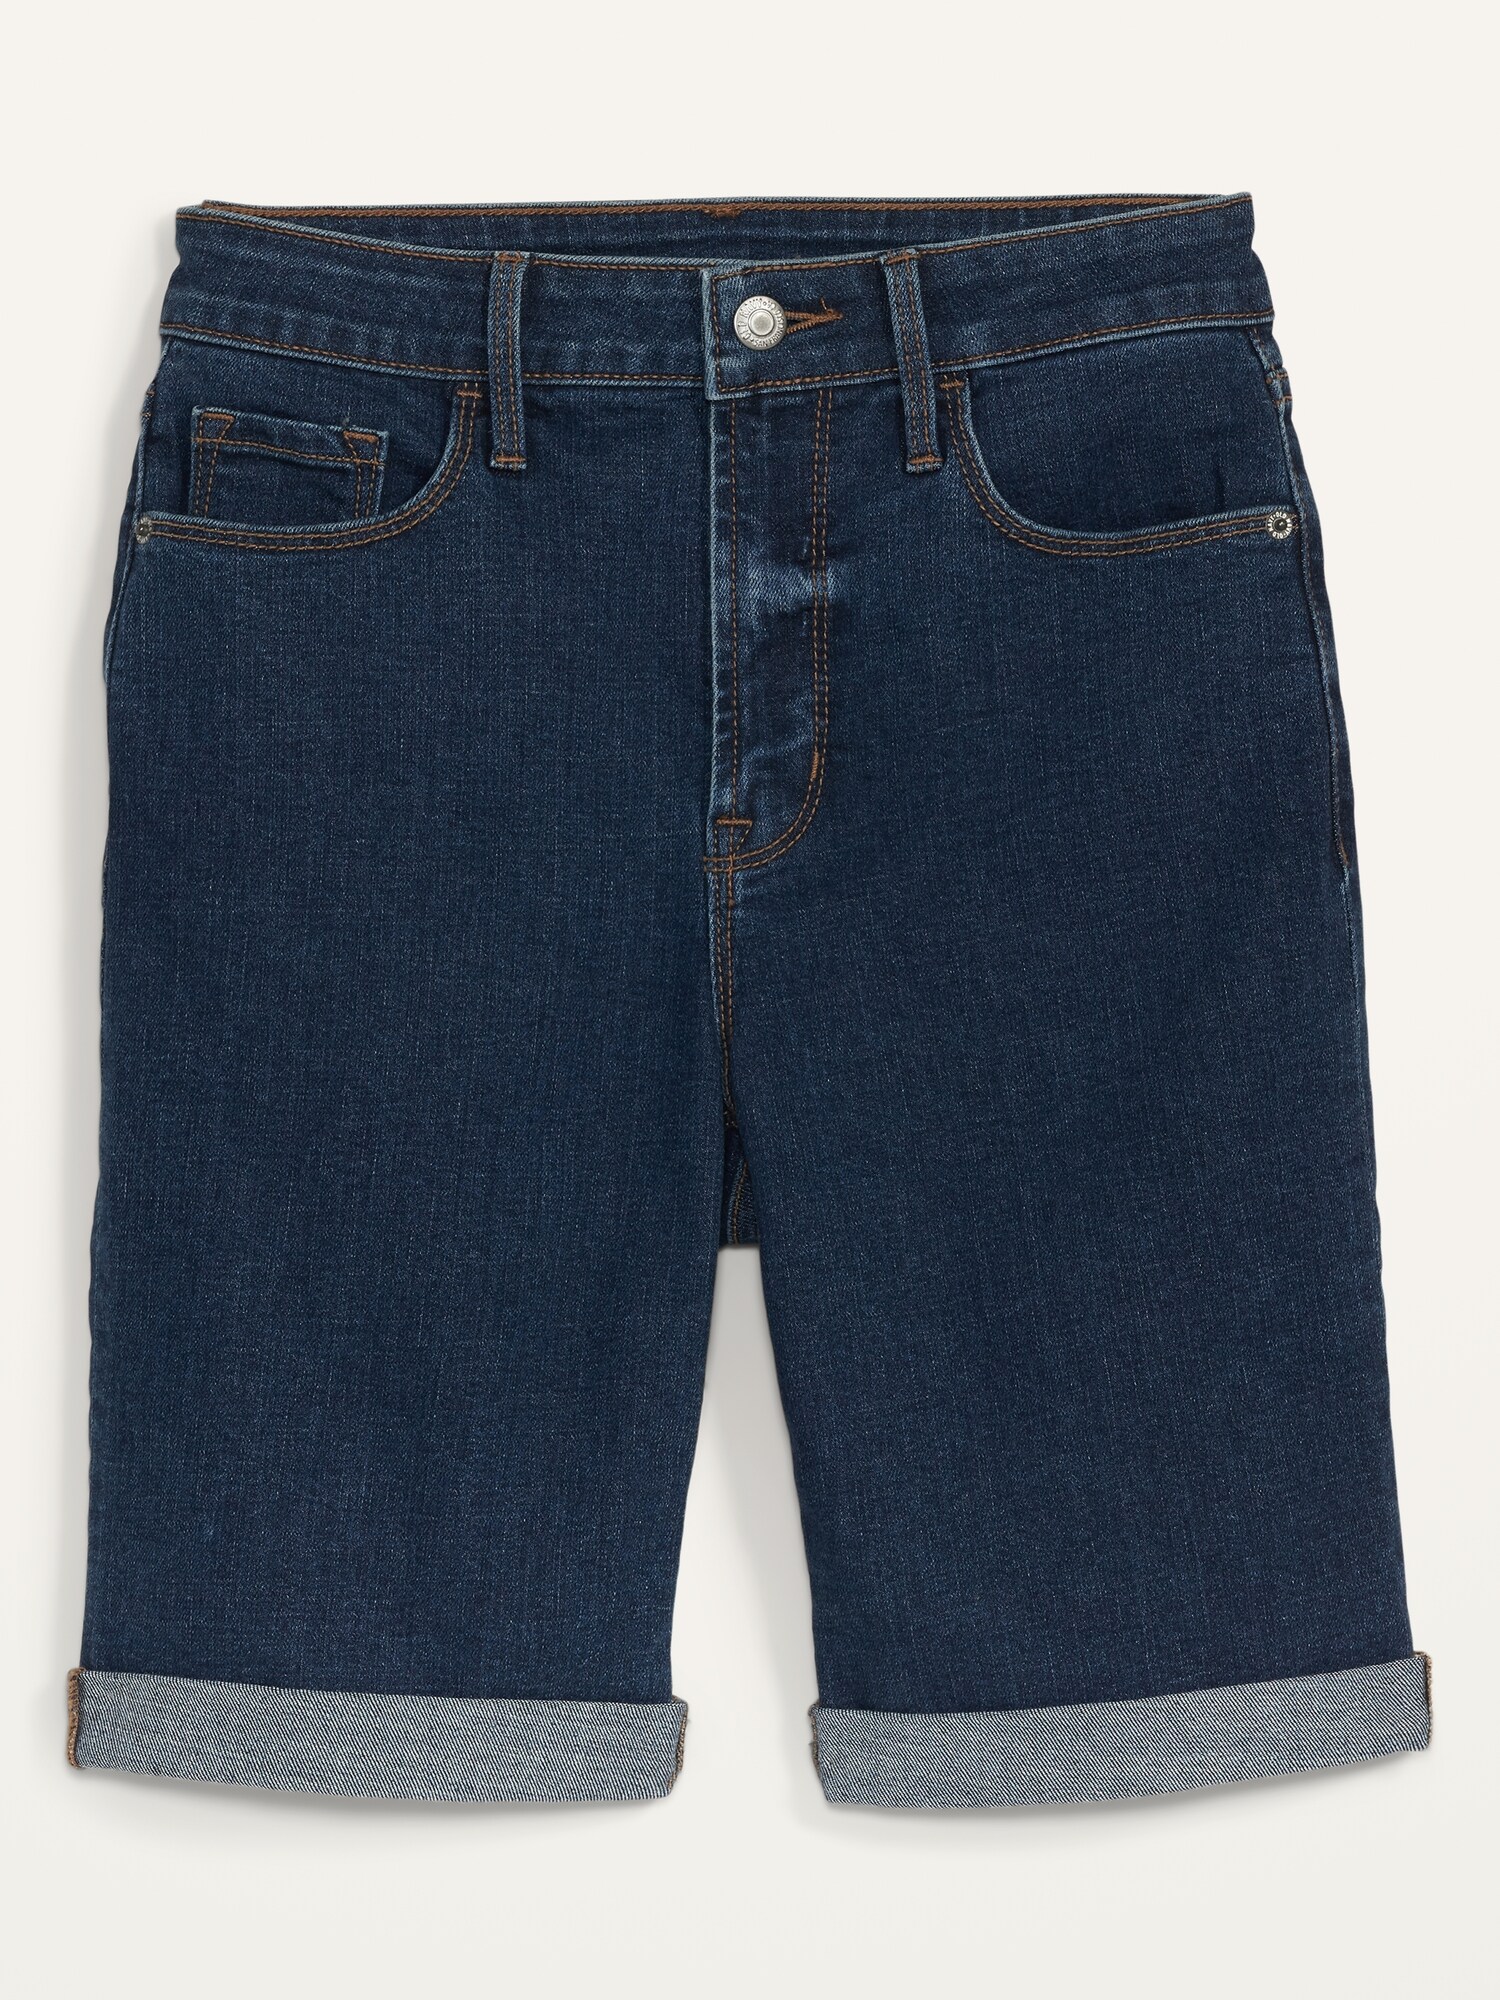 High-Waisted Dark-Wash Cuffed Bermuda Jean Shorts for Women -- 9-inch inseam